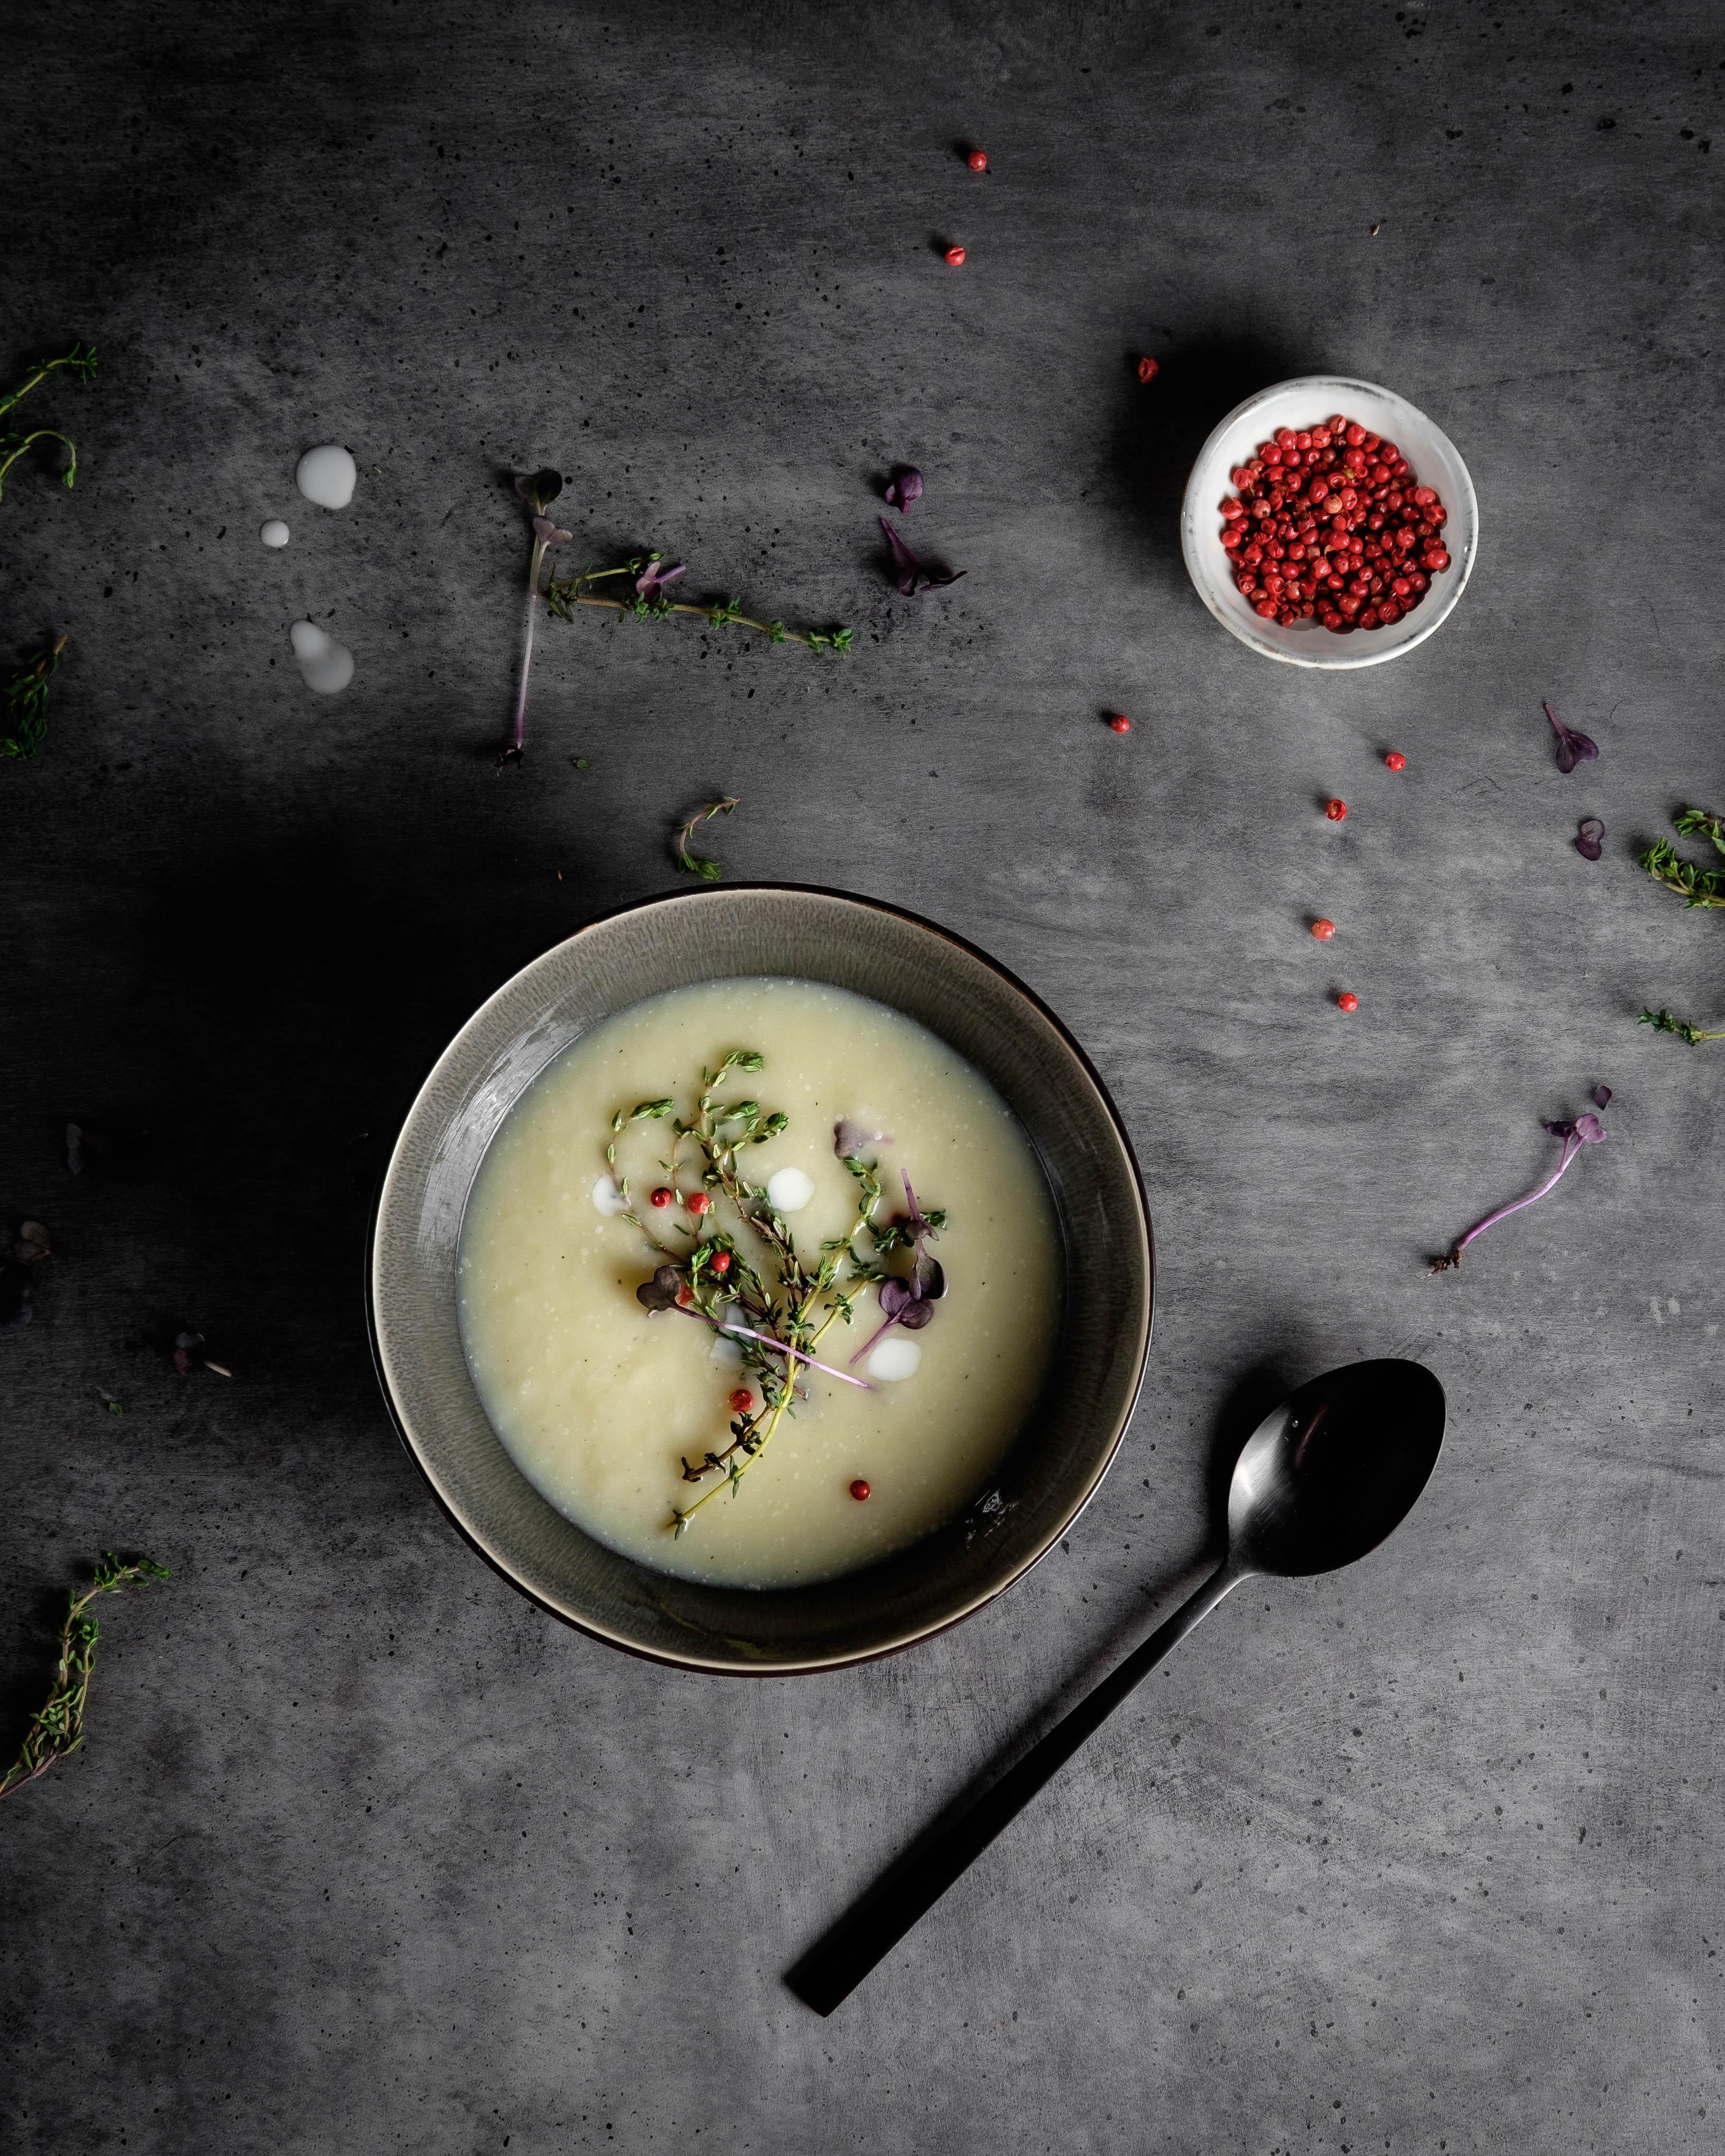 Weiße Spargelcremesuppe. Vegan und glutenfrei ❣️
#vegan #glutenfrei #ihana #Foodblog